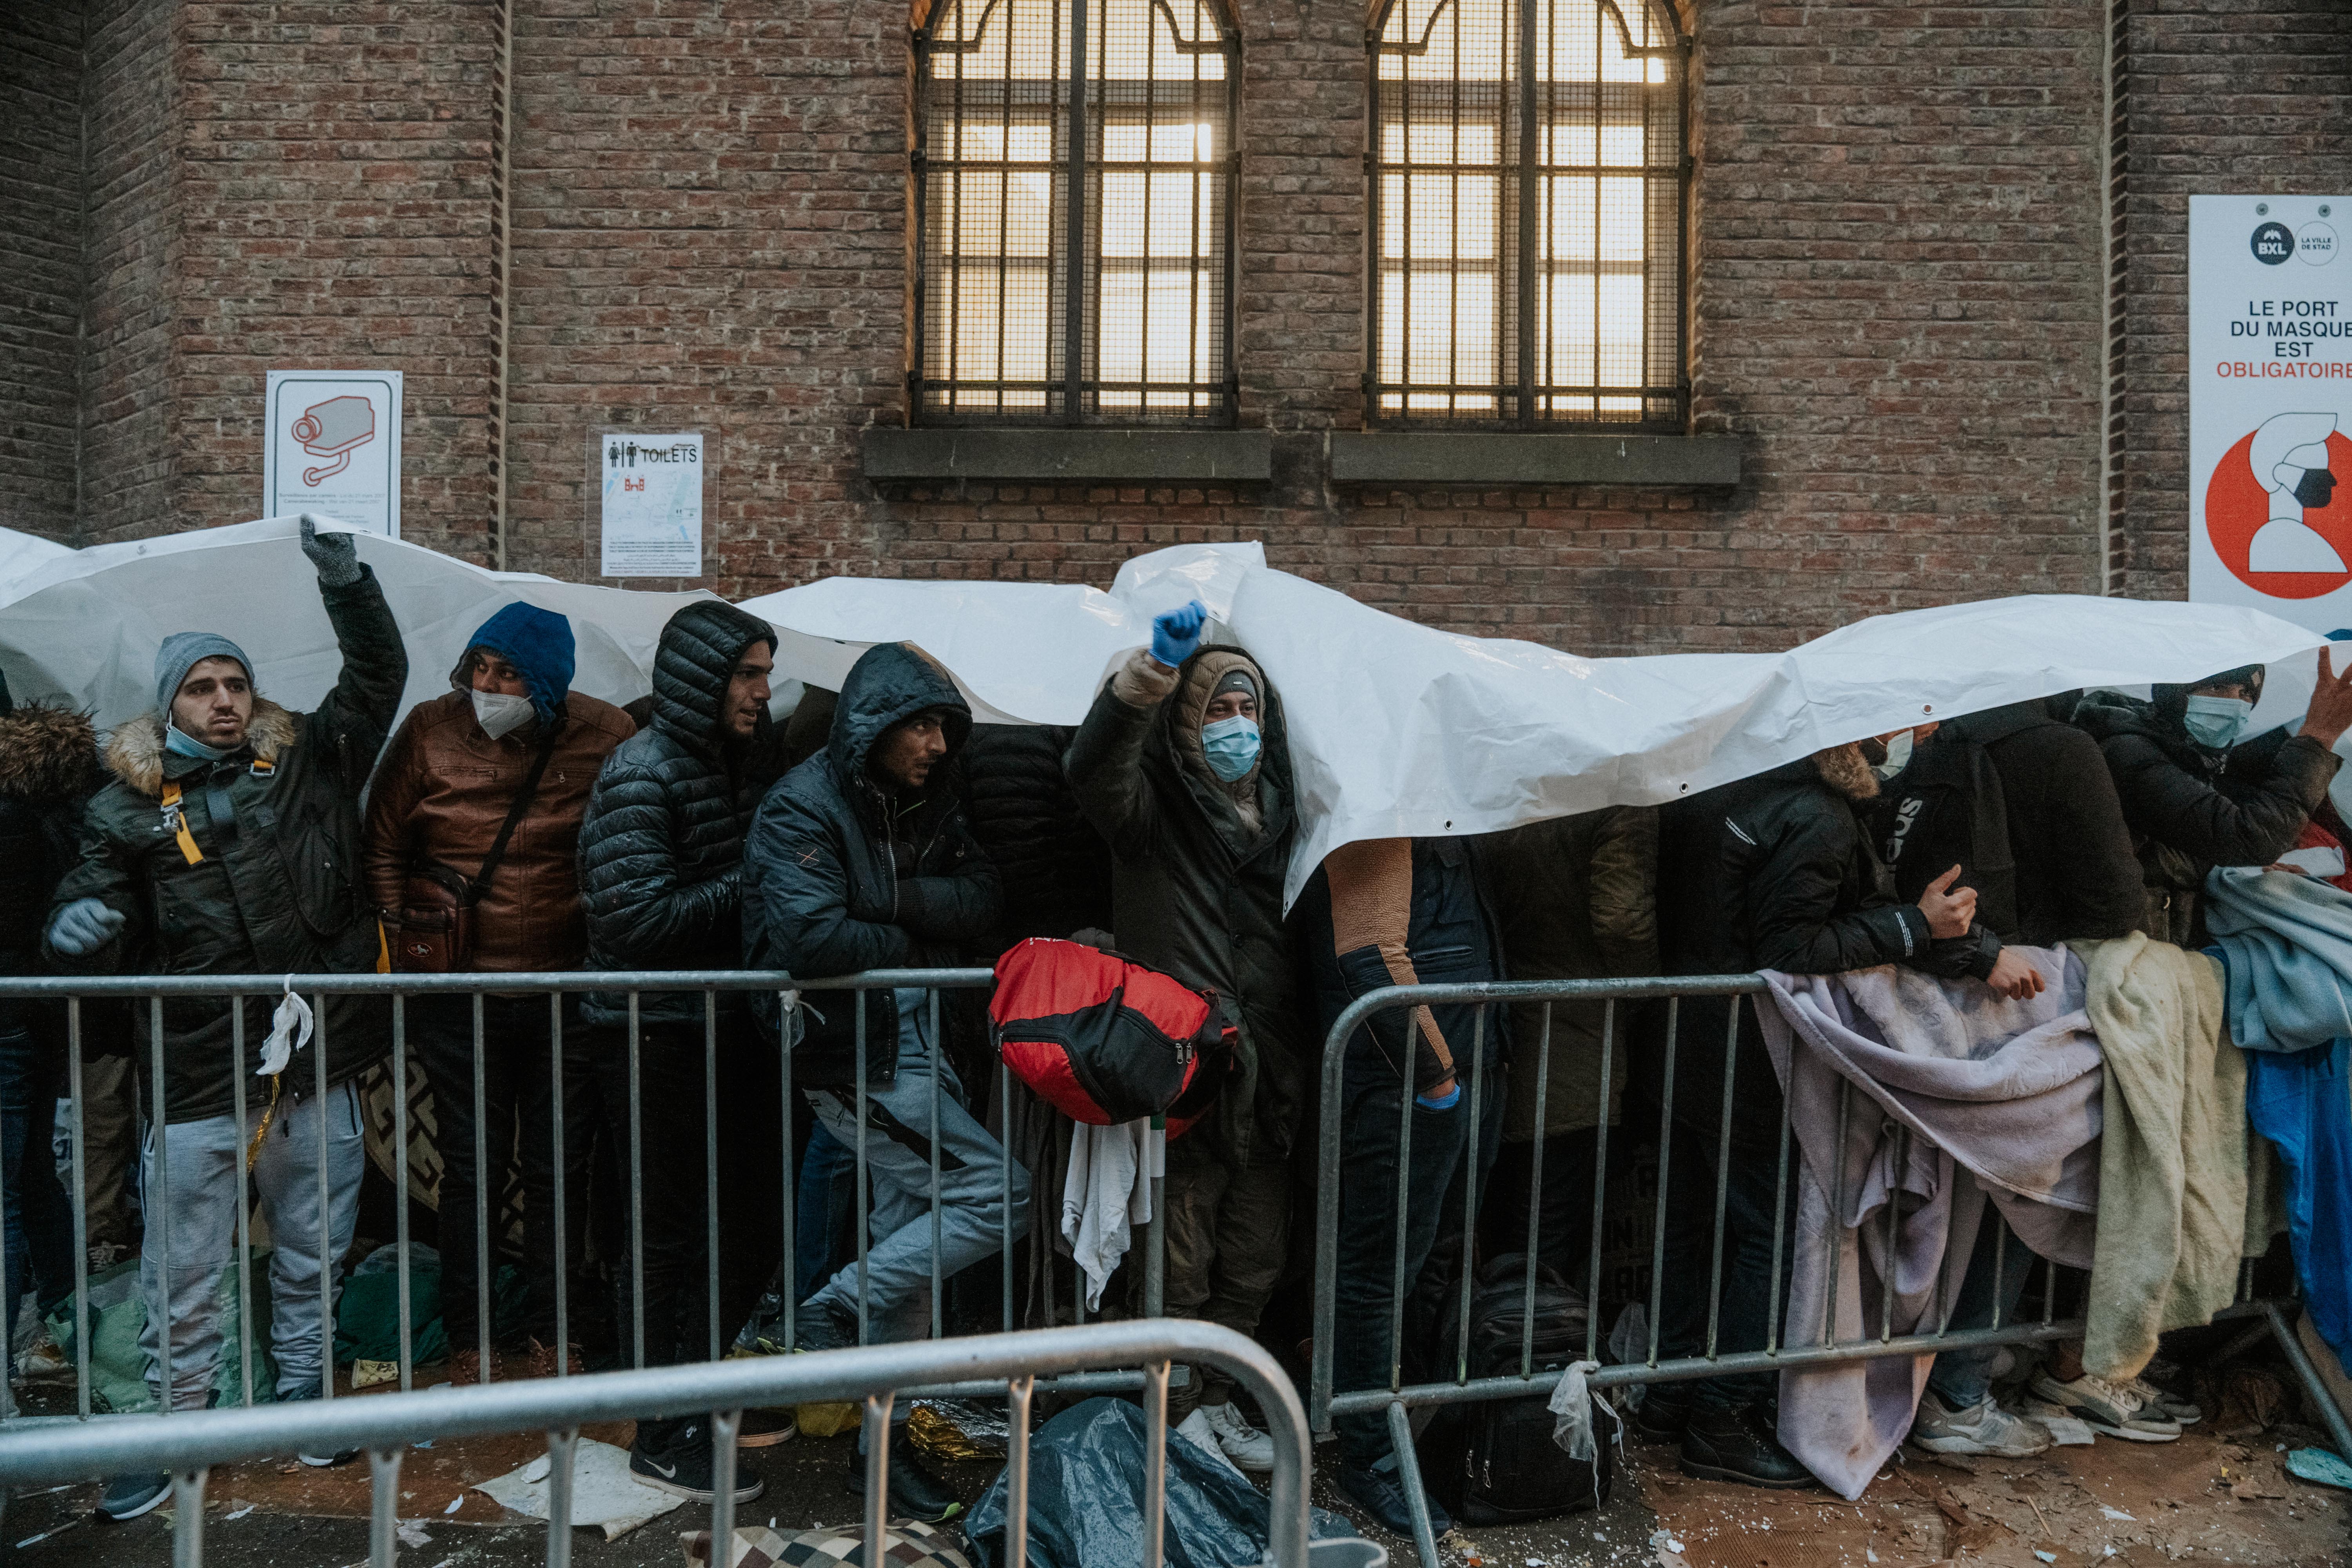 Des centaines de personnes ont attendu pendant des jours dans un froid glacial au Klein Kasteeltje à Bruxelles en décembre 2021. Ces réfugiés et demandeurs d'asile ont attendu en vain de pouvoir demander une protection internationale et un accueil. La Belgique est toujours aux prises avec une grave pénurie d'accueil. © Julien Dewarichet, 2021